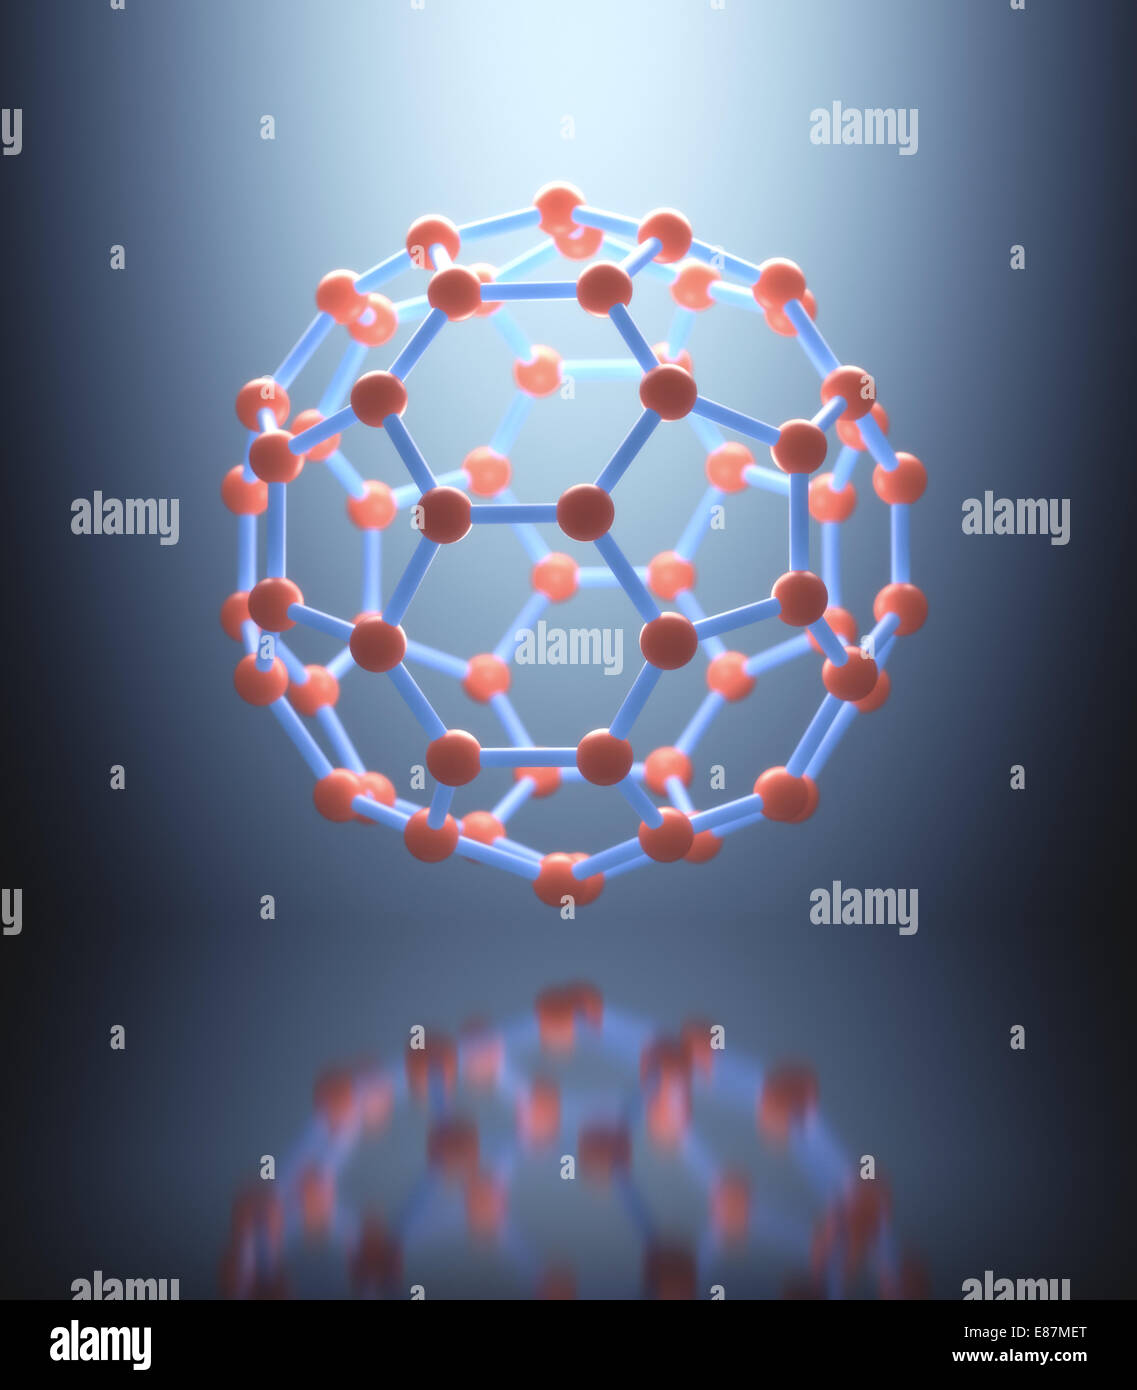 Molekulare Struktur auf reflektierende Oberfläche schweben. Stockfoto